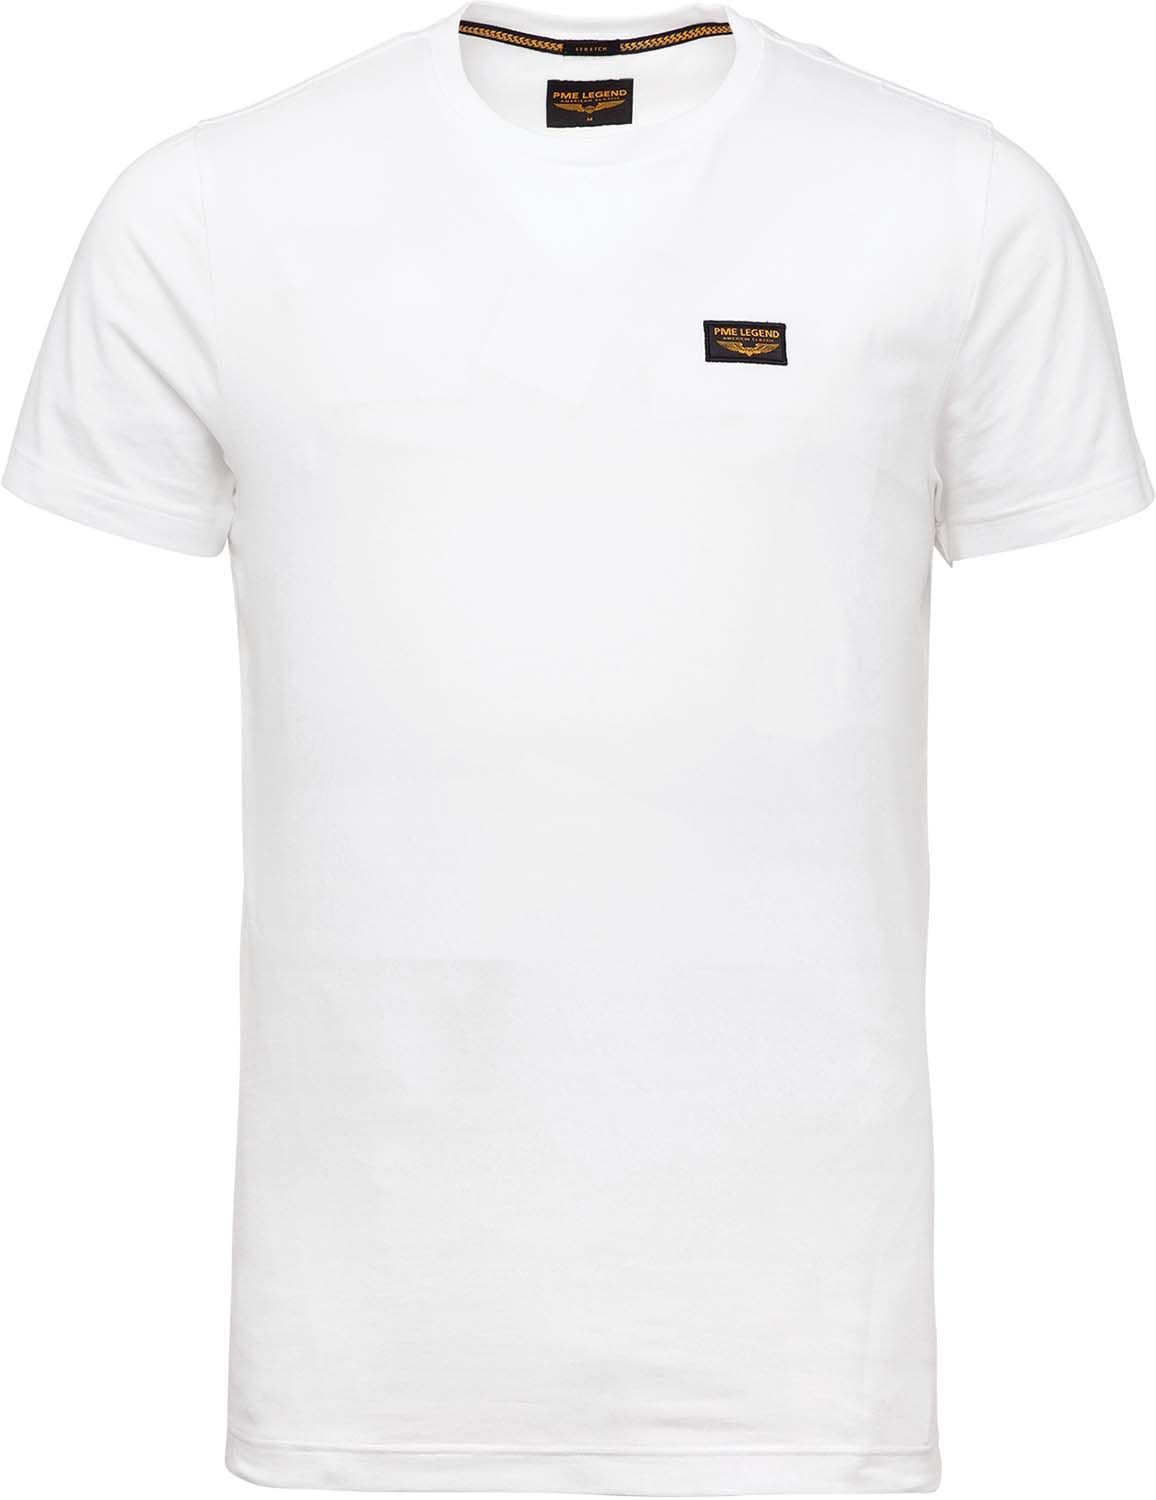 deed het kortademigheid Vanaf daar PME Legend Guyver tee Wit T-shirts | Gratis bezorging - Bomont.nl